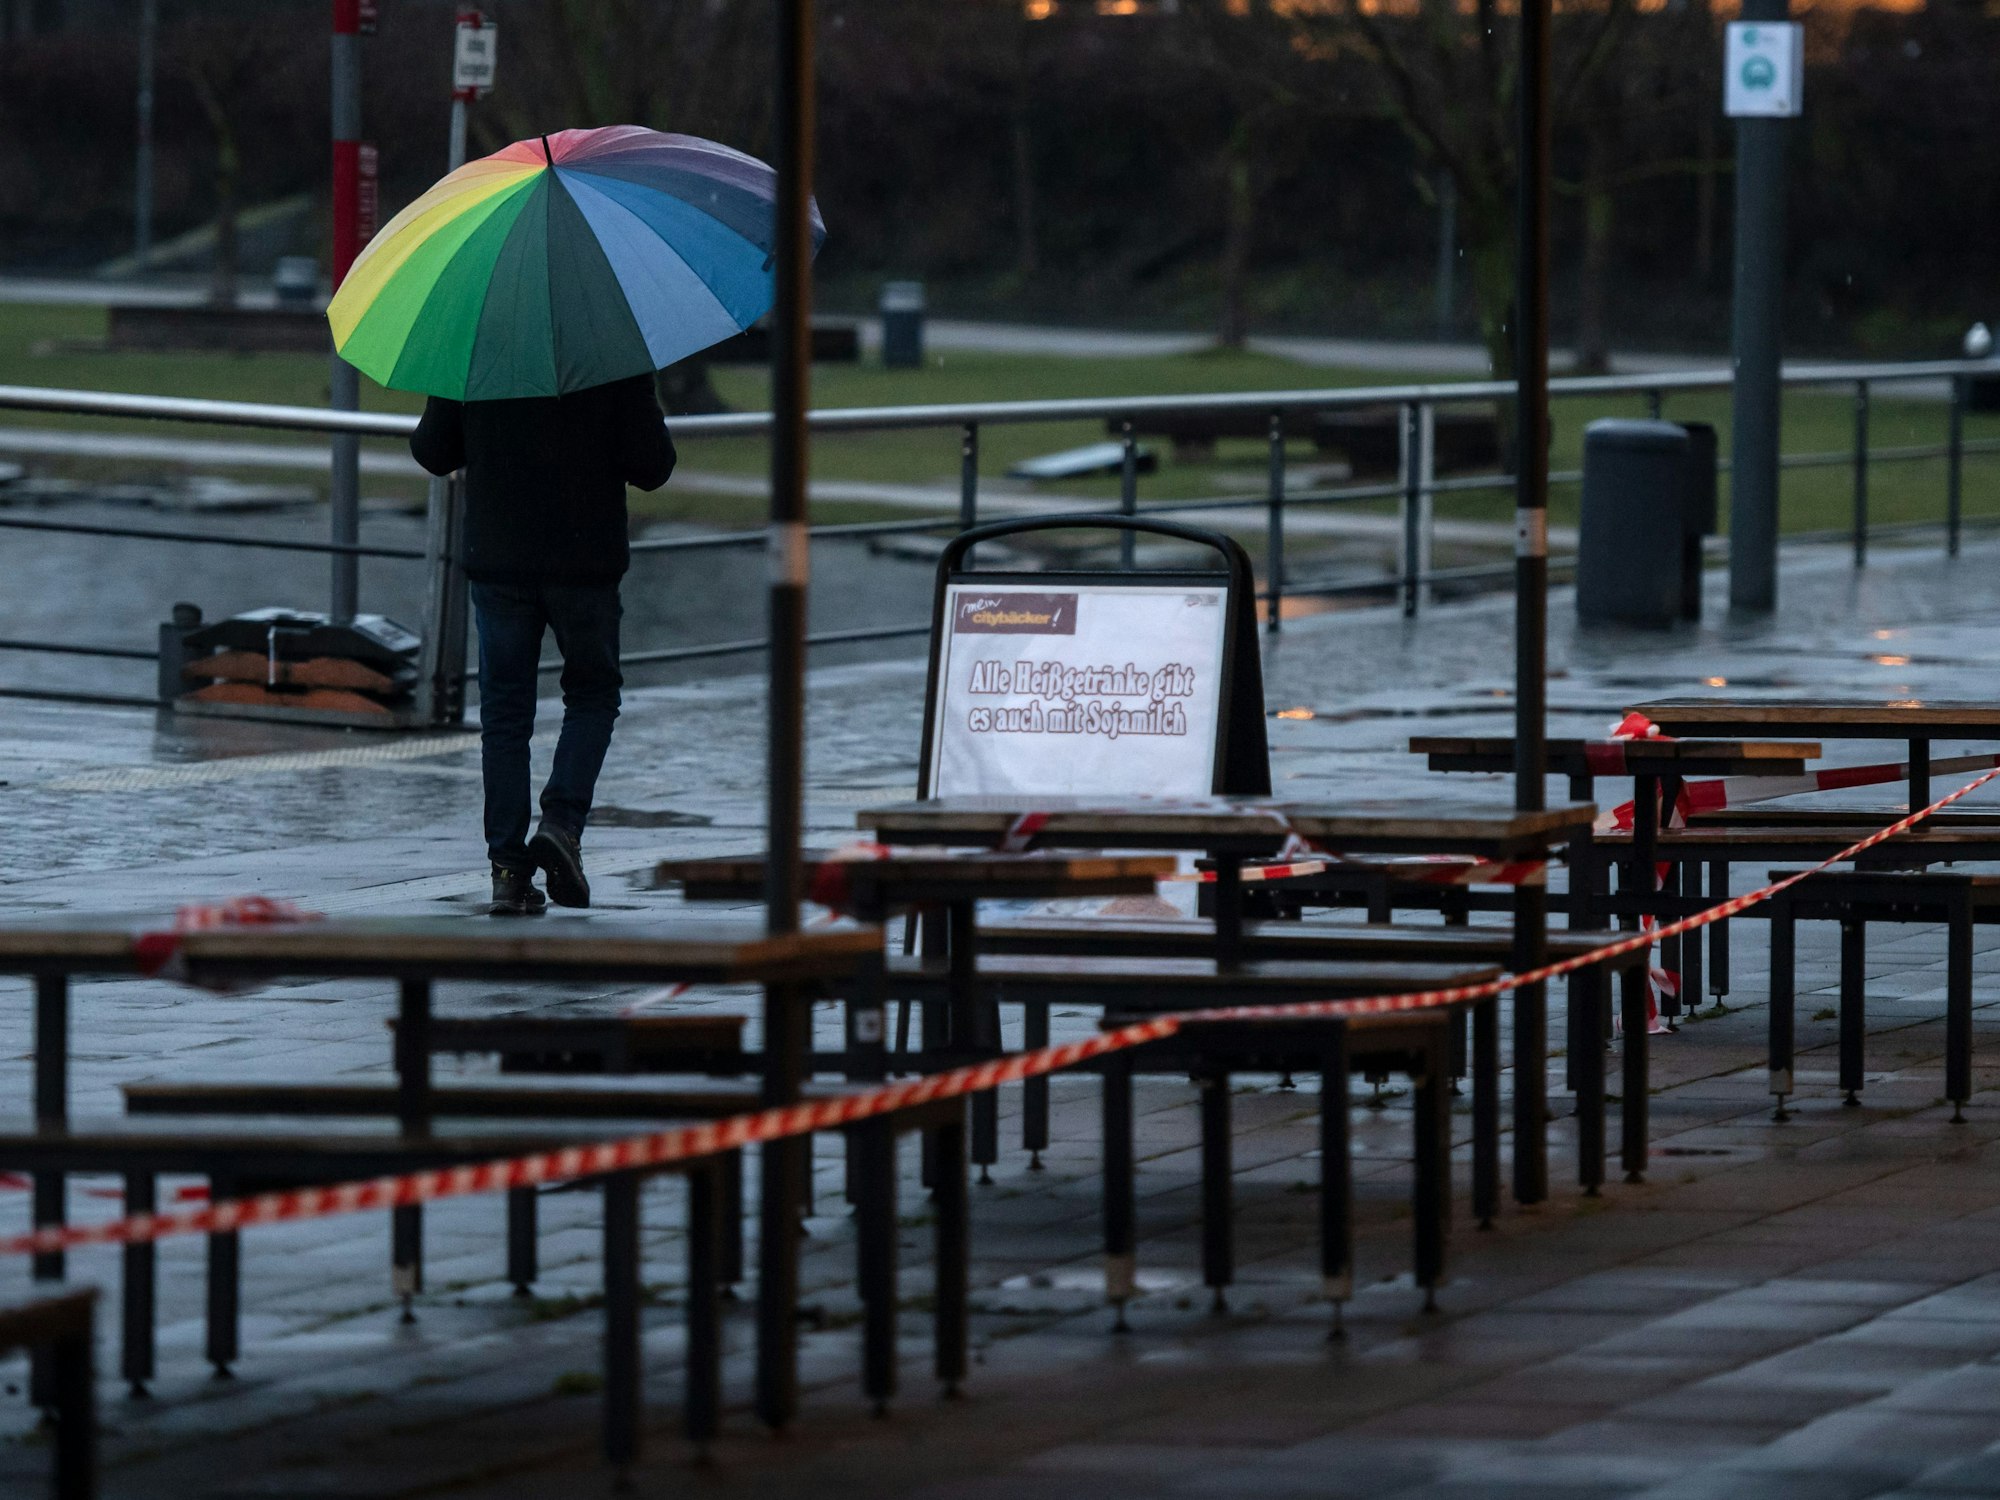 Ein Passant geht unter einem bunten Regenschirm an der Uferprommenade des Phoenix Sees an den wegen der Corona-Pandemie gesperrten Tischen vor einer Bäckerei vorbei.